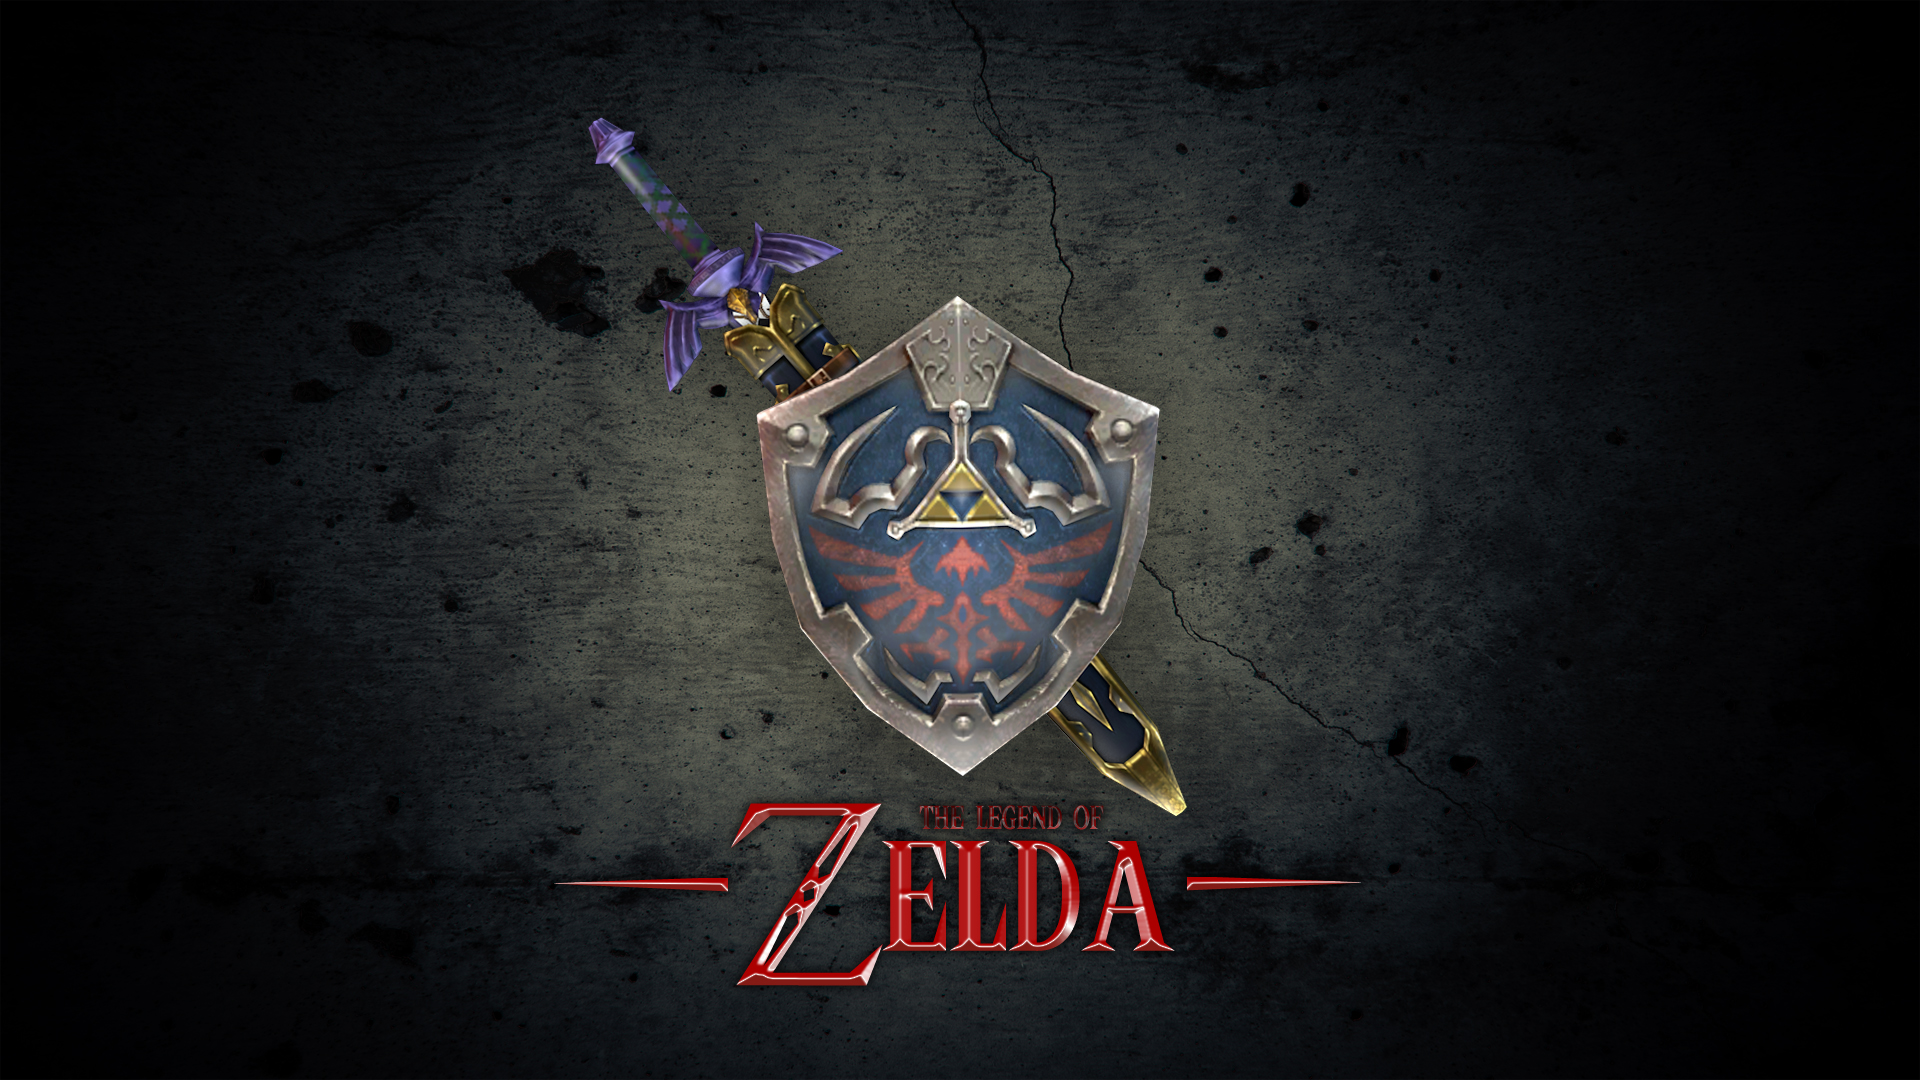  Post Anime The Legends Of Zelda Swords Logo HD Wallpapers 1080x1920Px 1920x1080